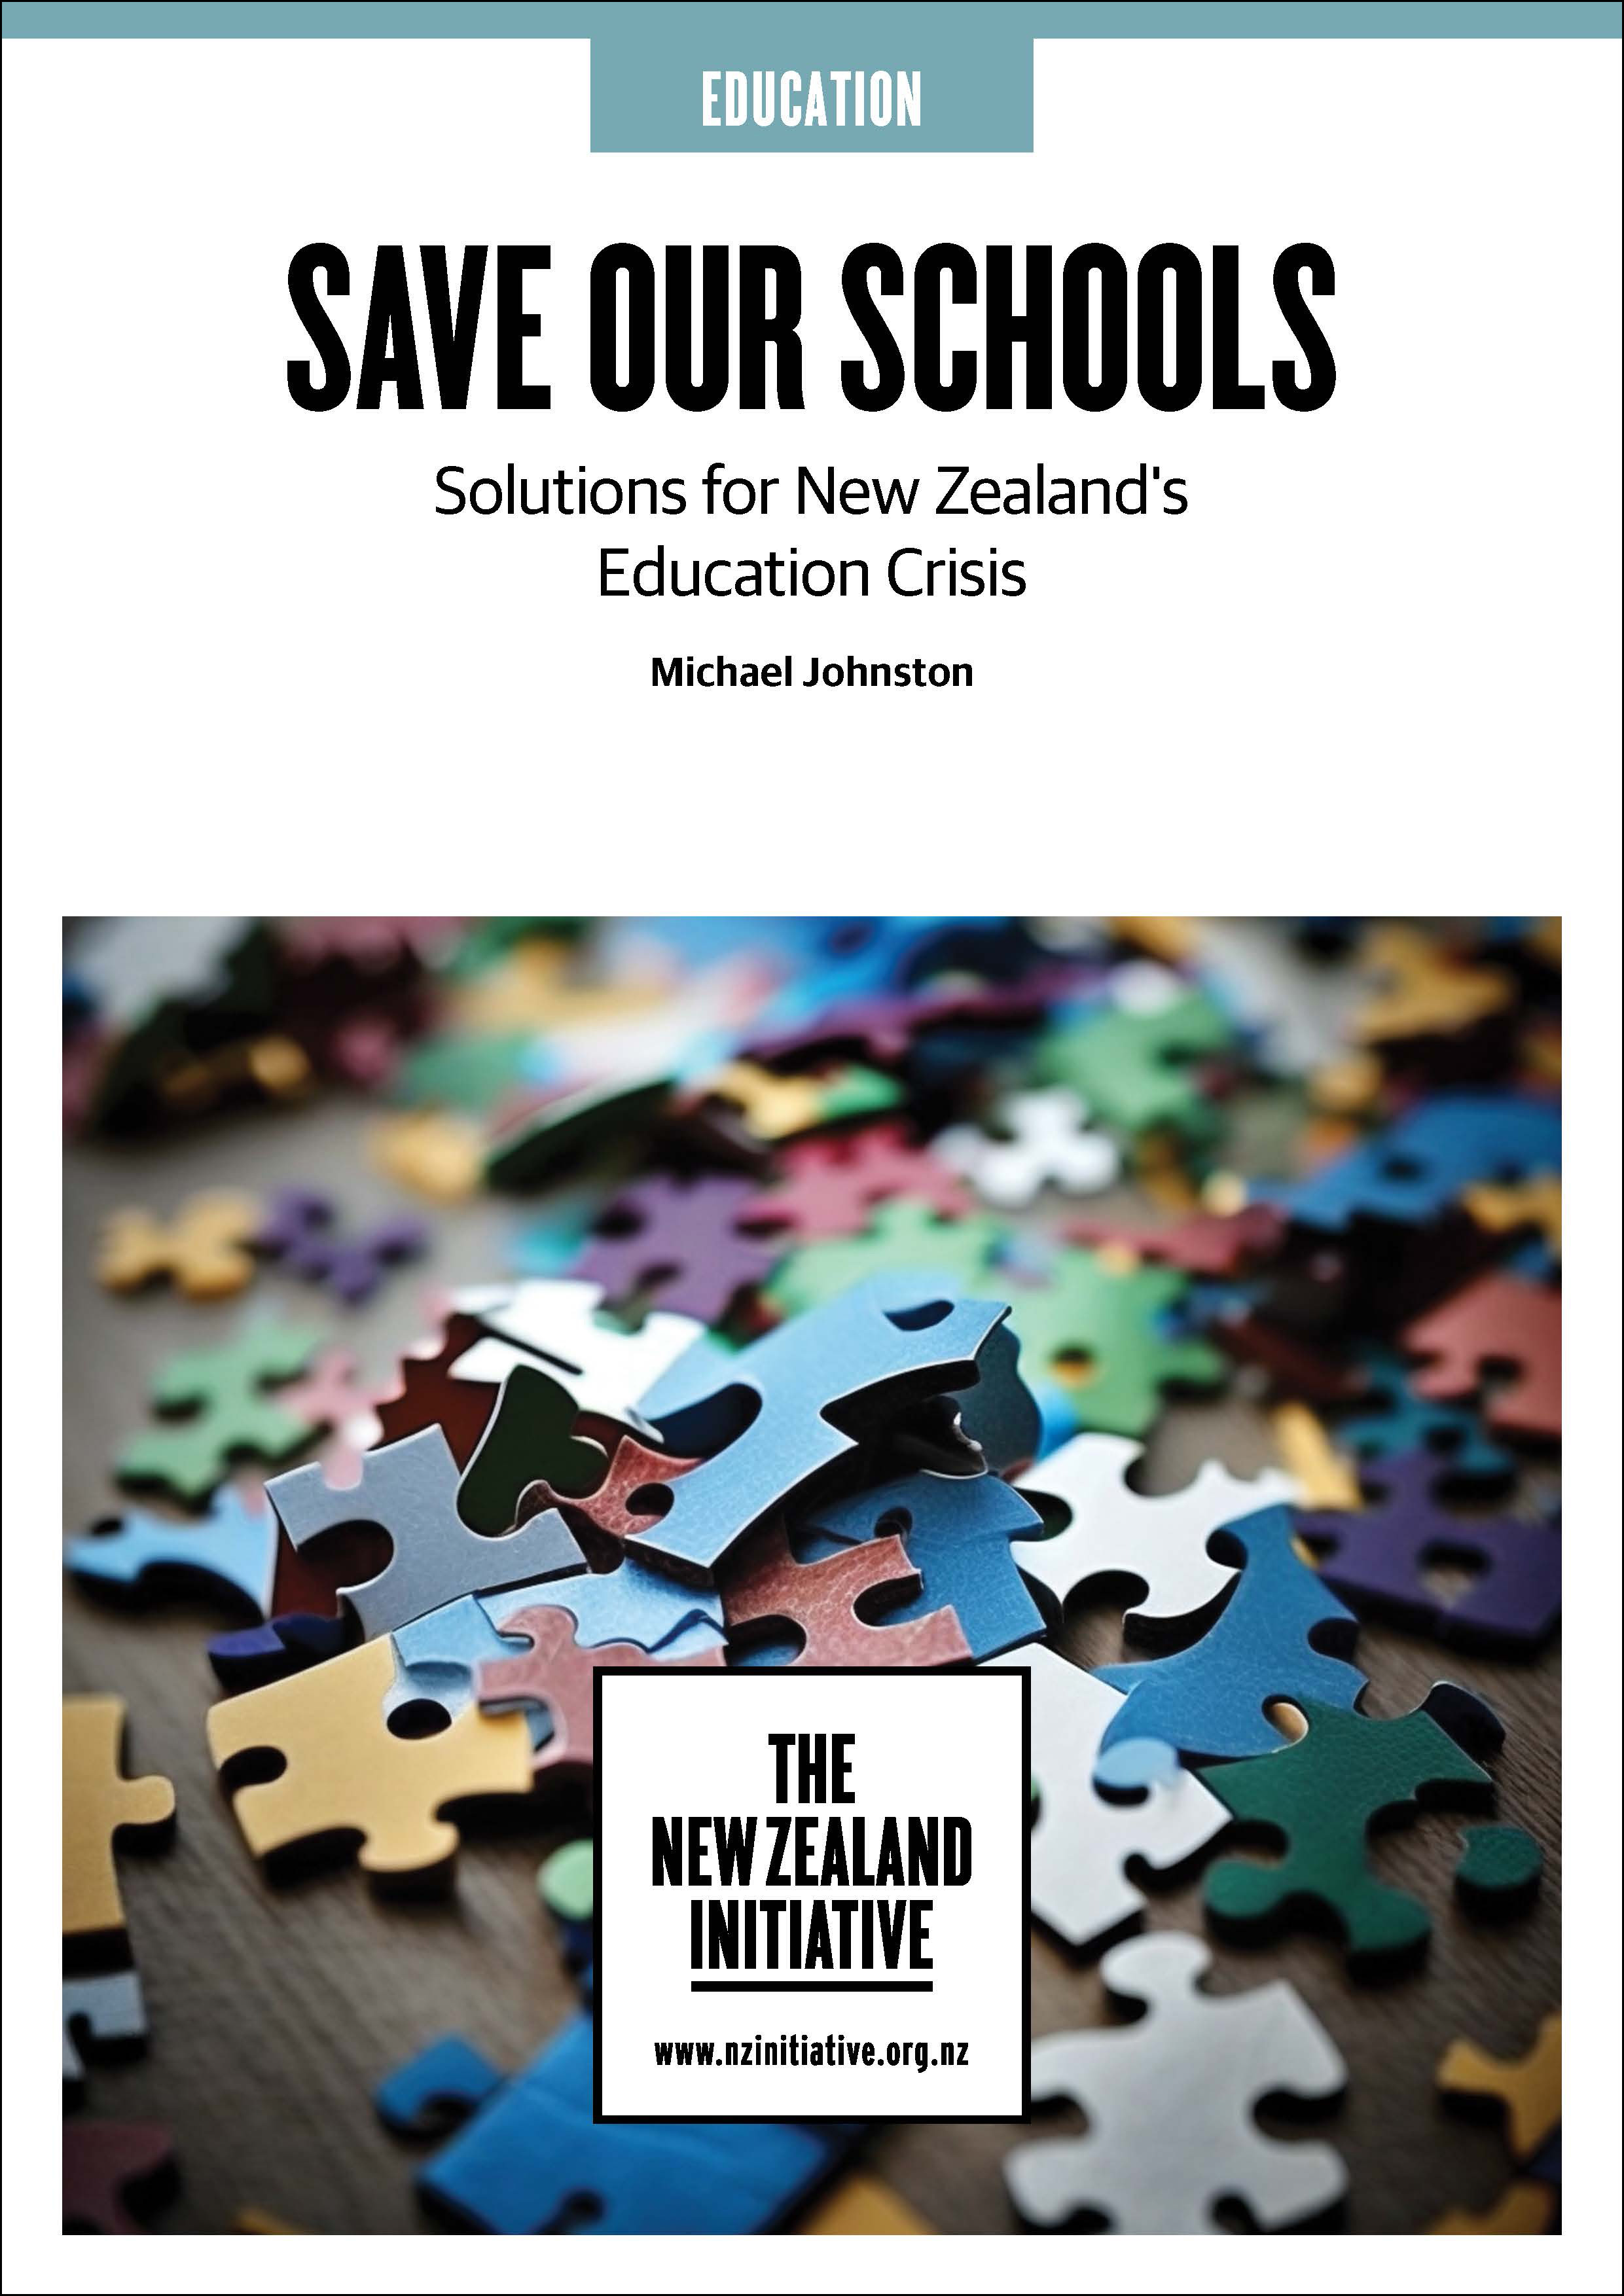 NZI018 Education Manifesto COVER v1